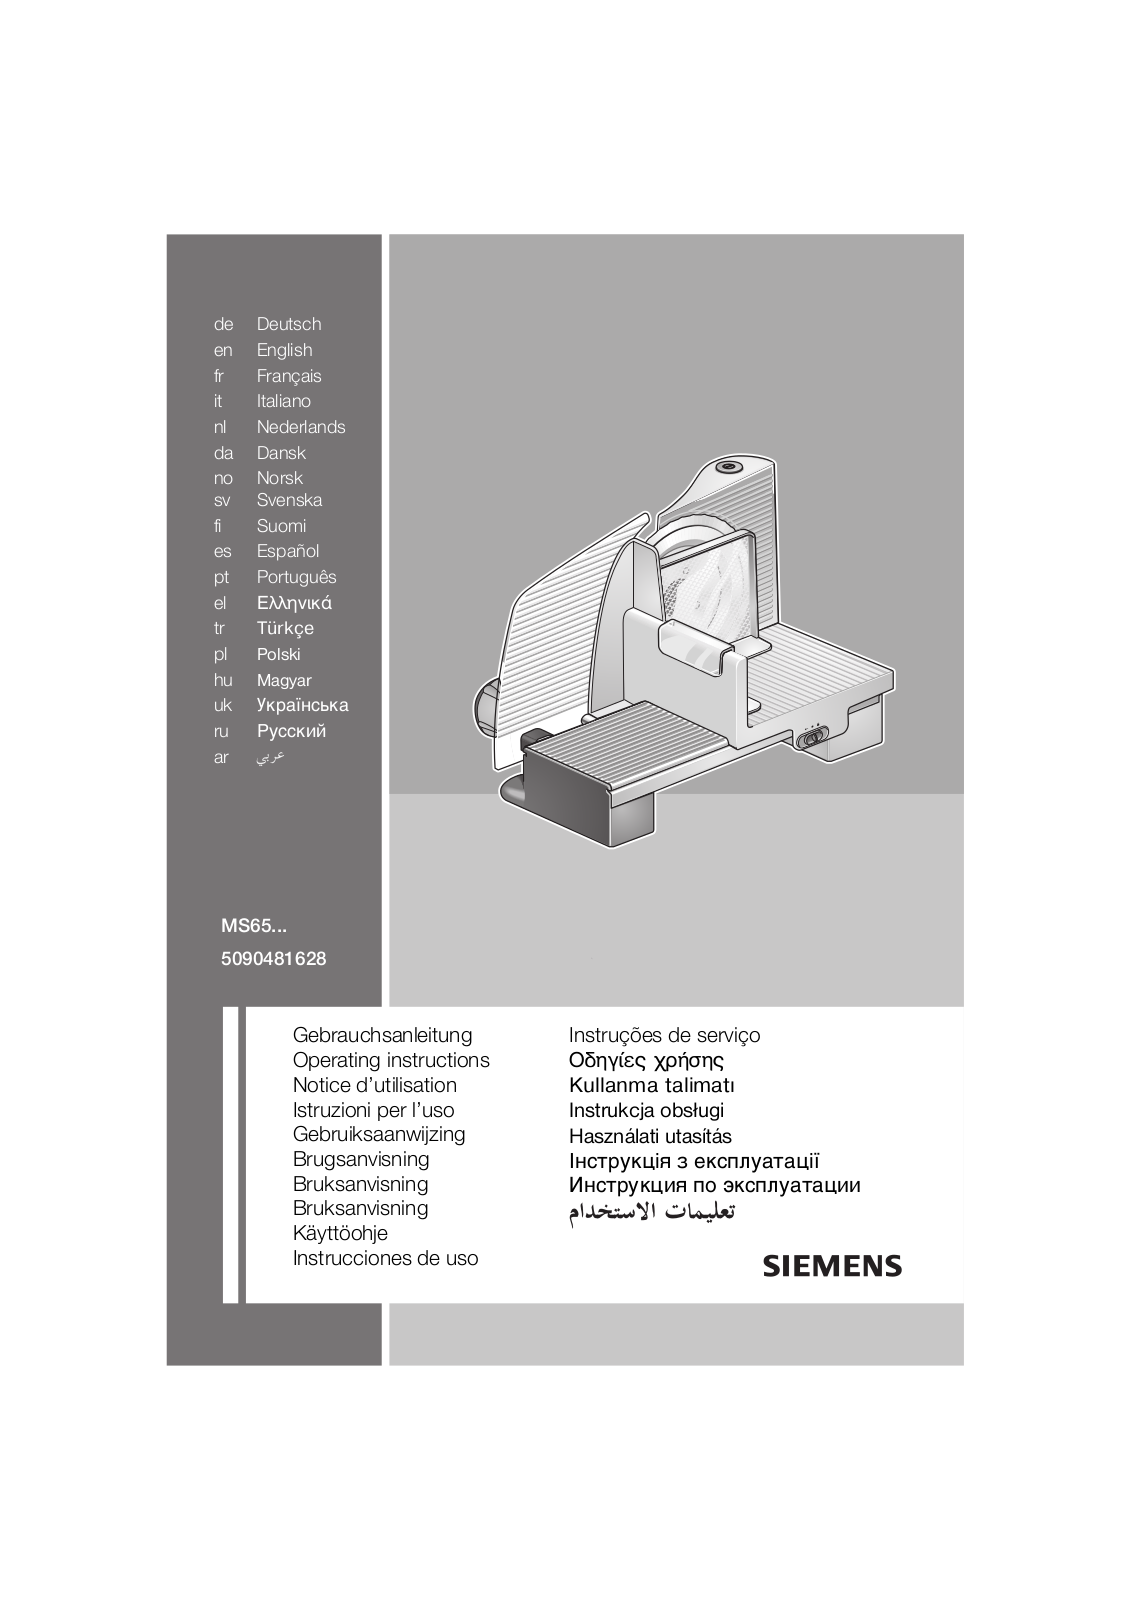 Siemens MS65001, MS65000 Manual